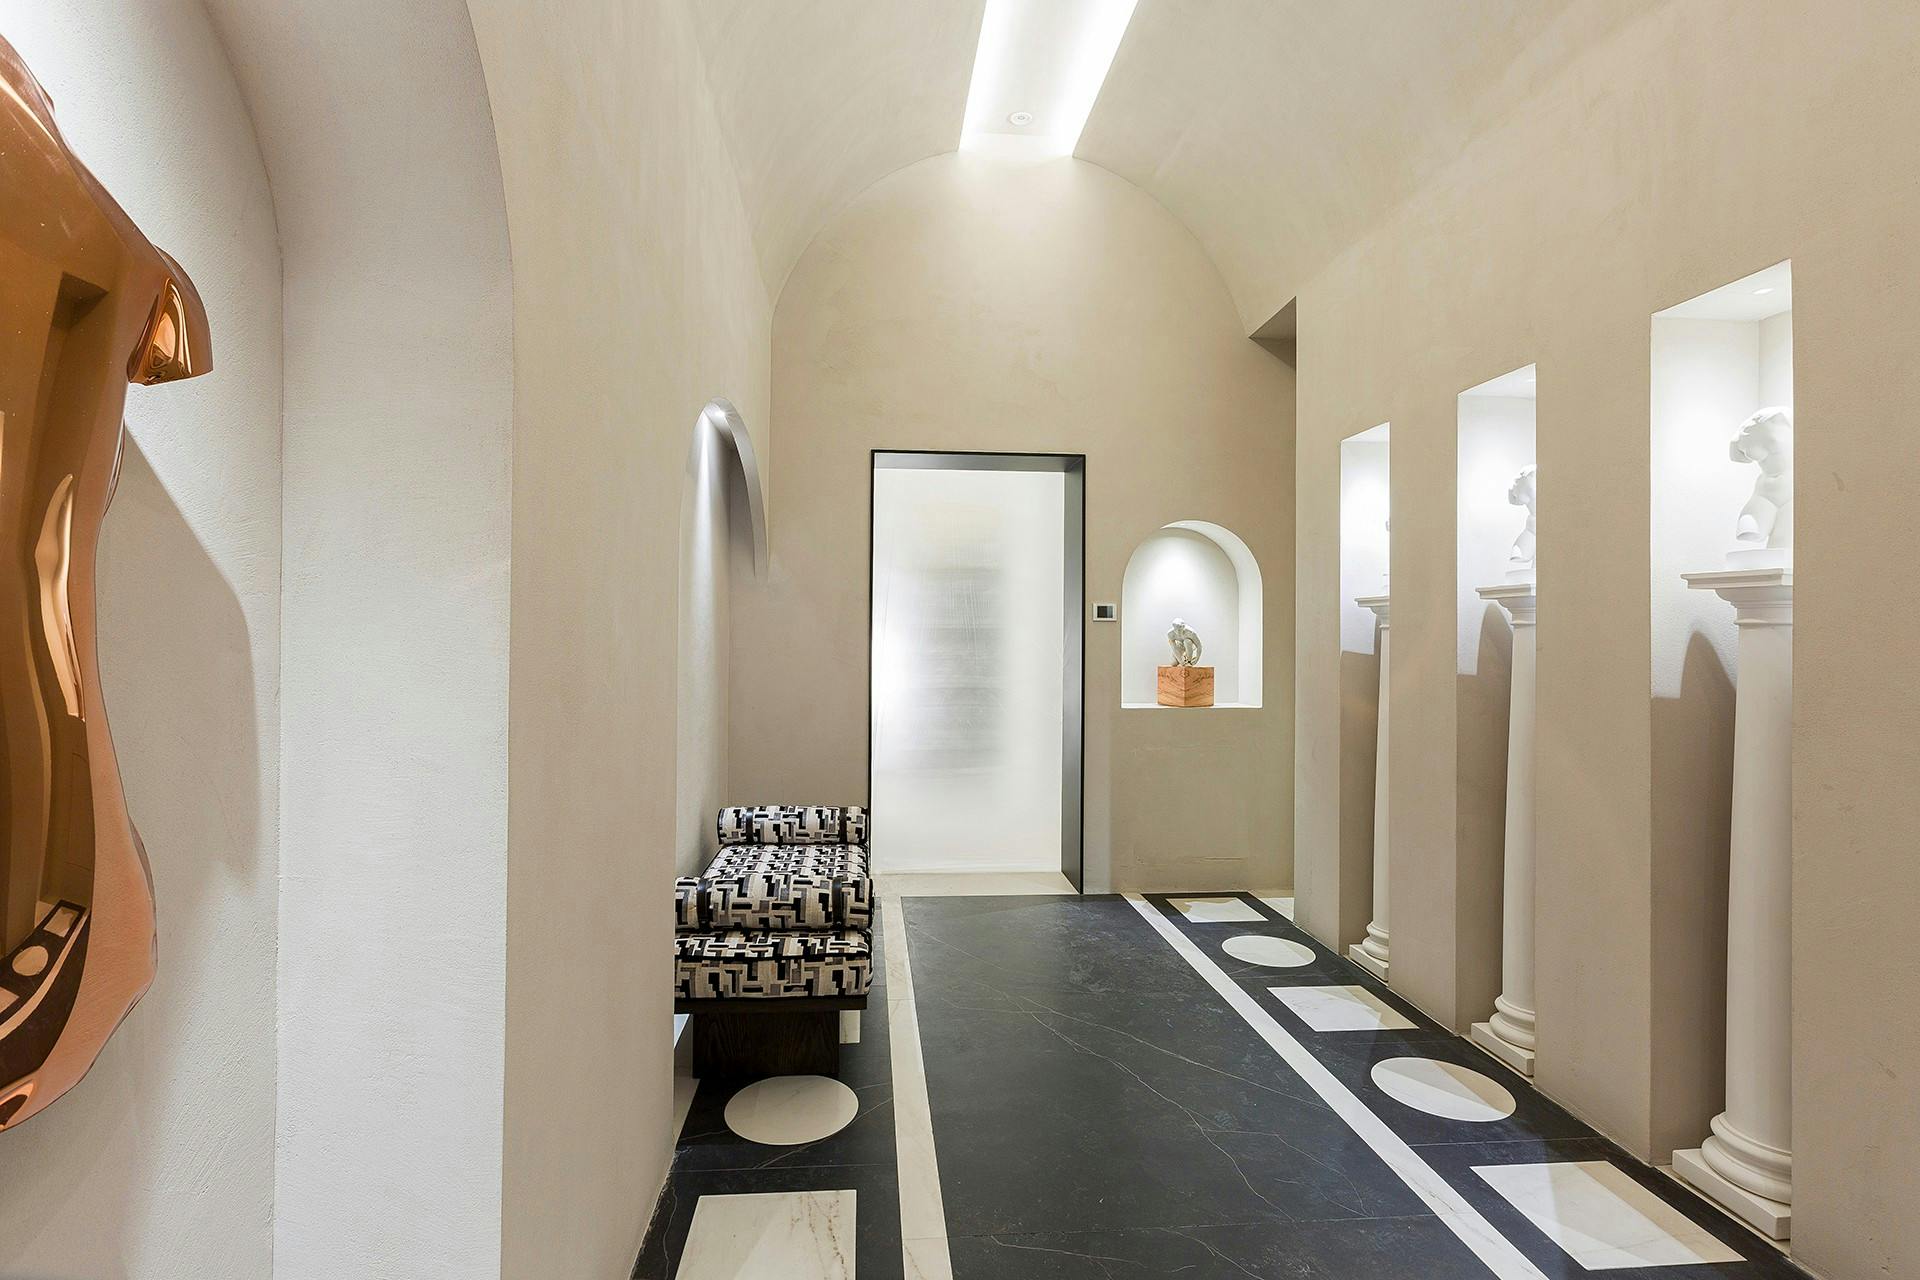 Bildnummer 36 des aktuellen Abschnitts von A contemporary public toilet design inspired by Roman public baths von Cosentino Deutschland